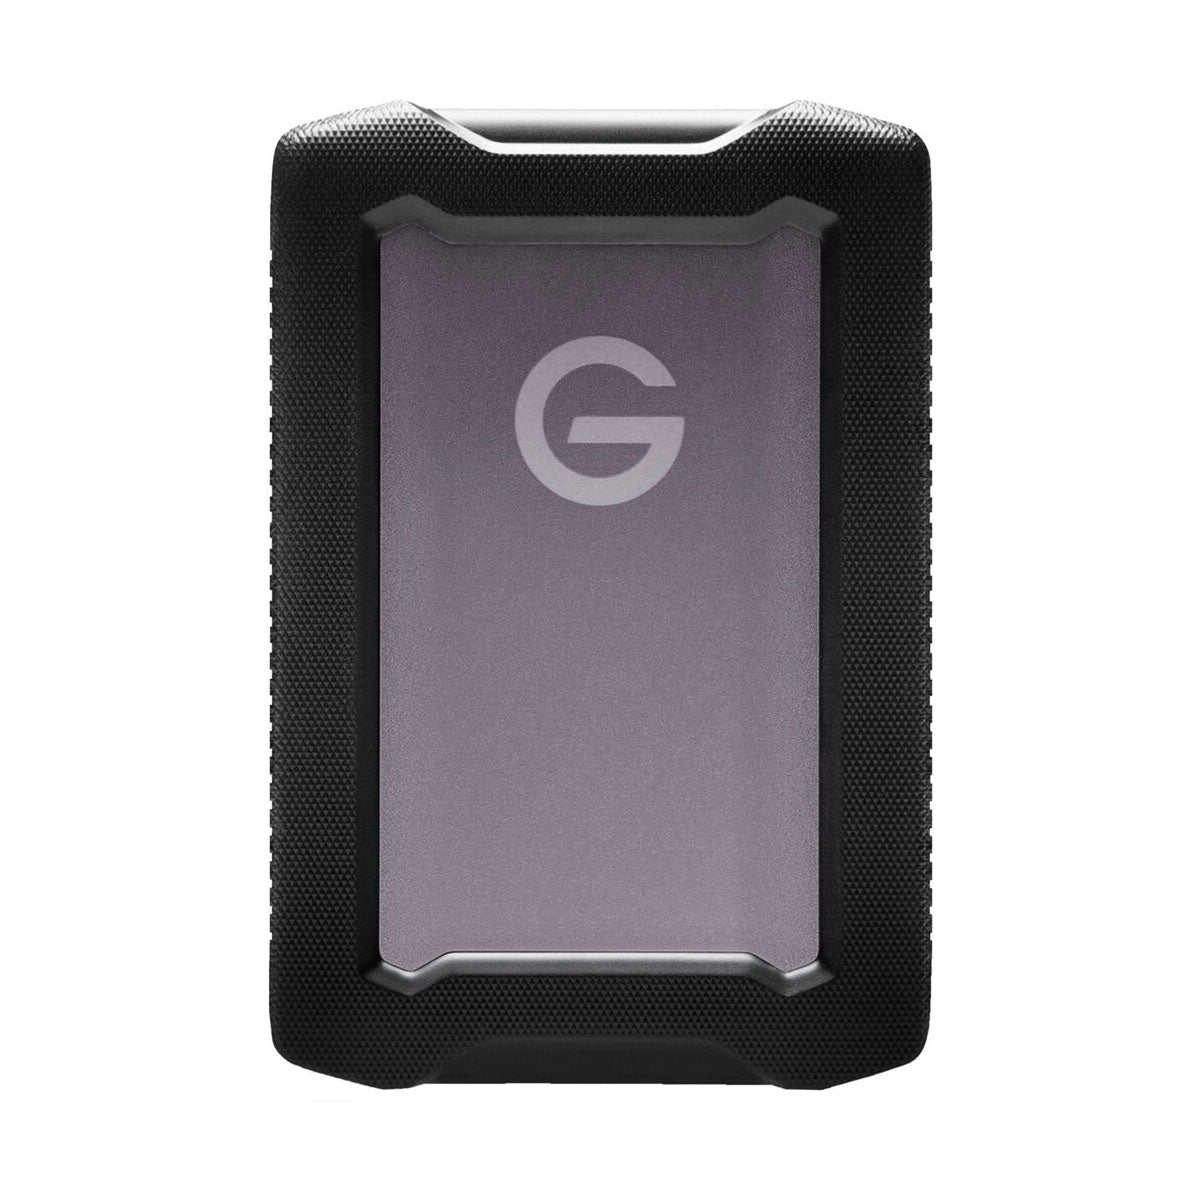 SanDisk Professional 4TB G-DRIVE ArmorATD USB-C 3.2 Gen 1 External Hard Drive